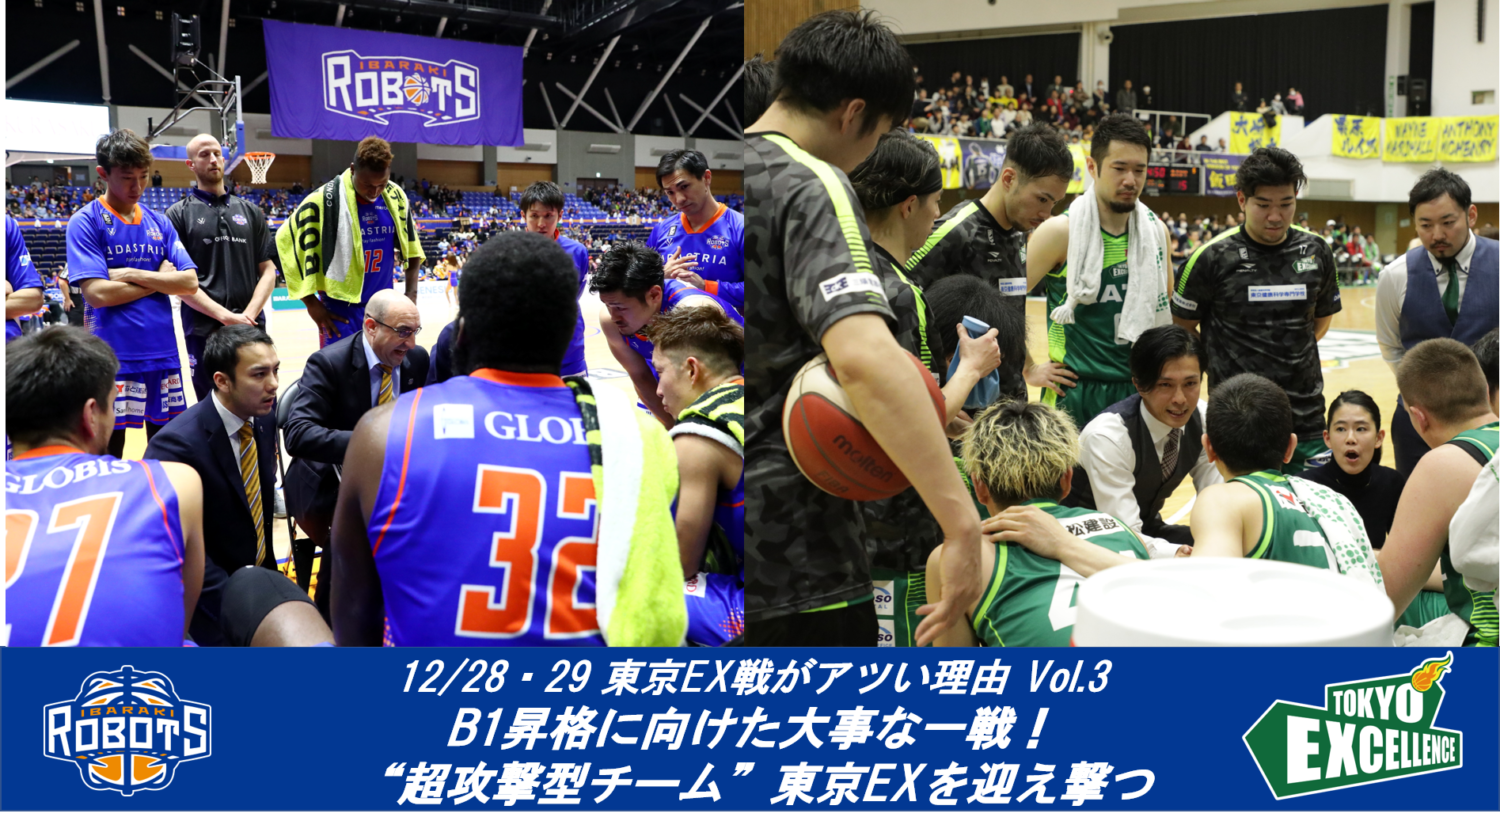 12/28・29 東京EX戦がアツい理由 Vol.3 <"超攻撃型"チームにロボッツが挑む！>